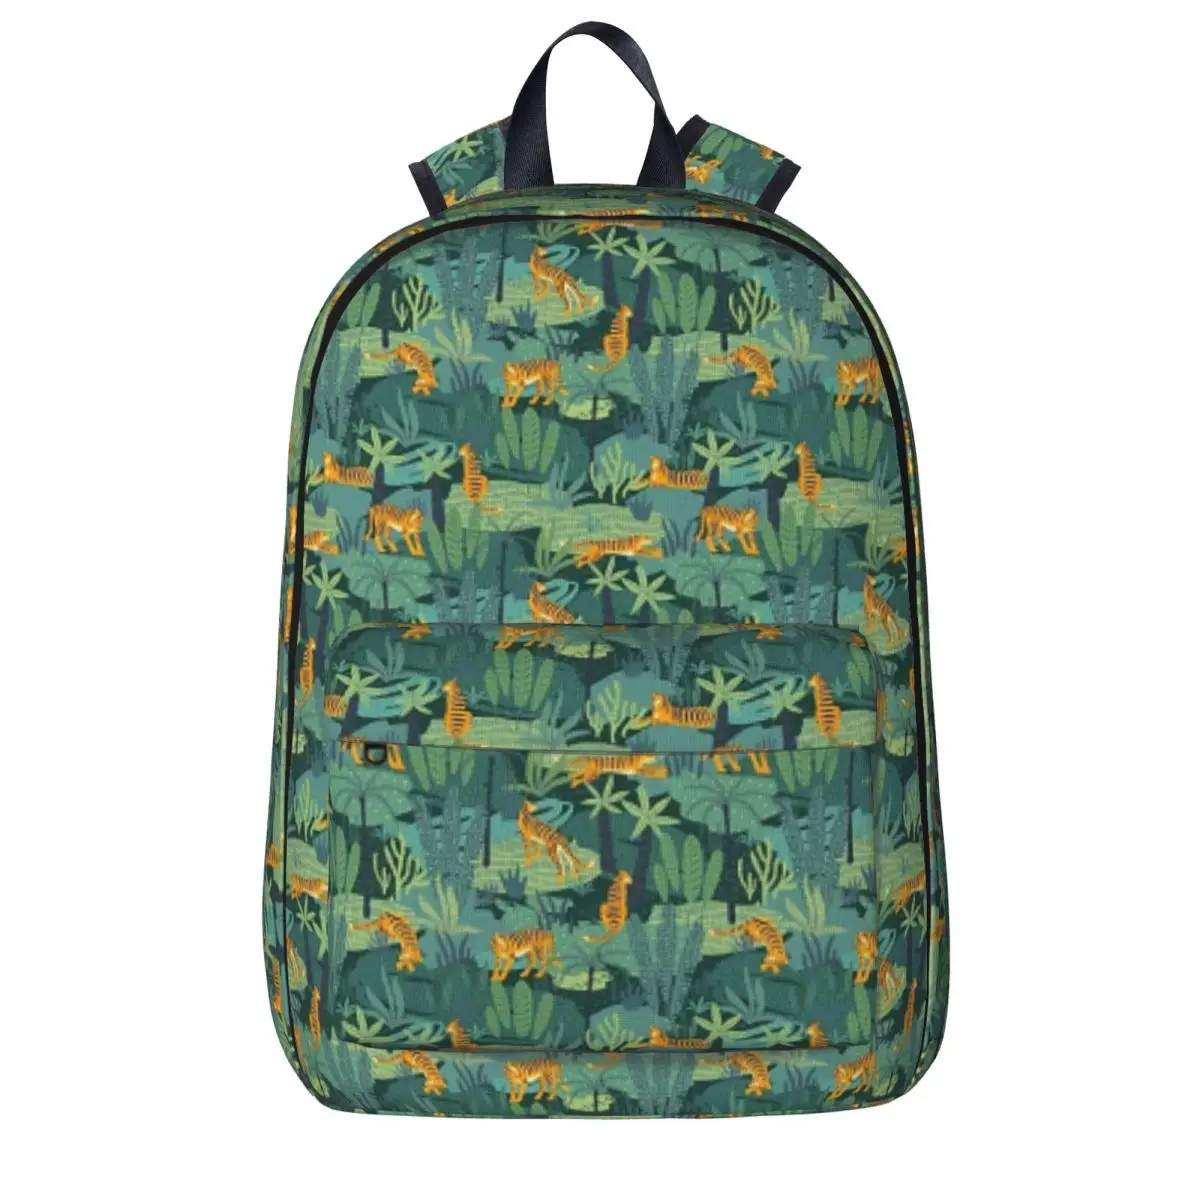 

Jungle Tiger Pattern Backpack16 Backpack Bookbag Children School Bags Cartoon Travel Rucksack Shoulder Bag Large Capacity